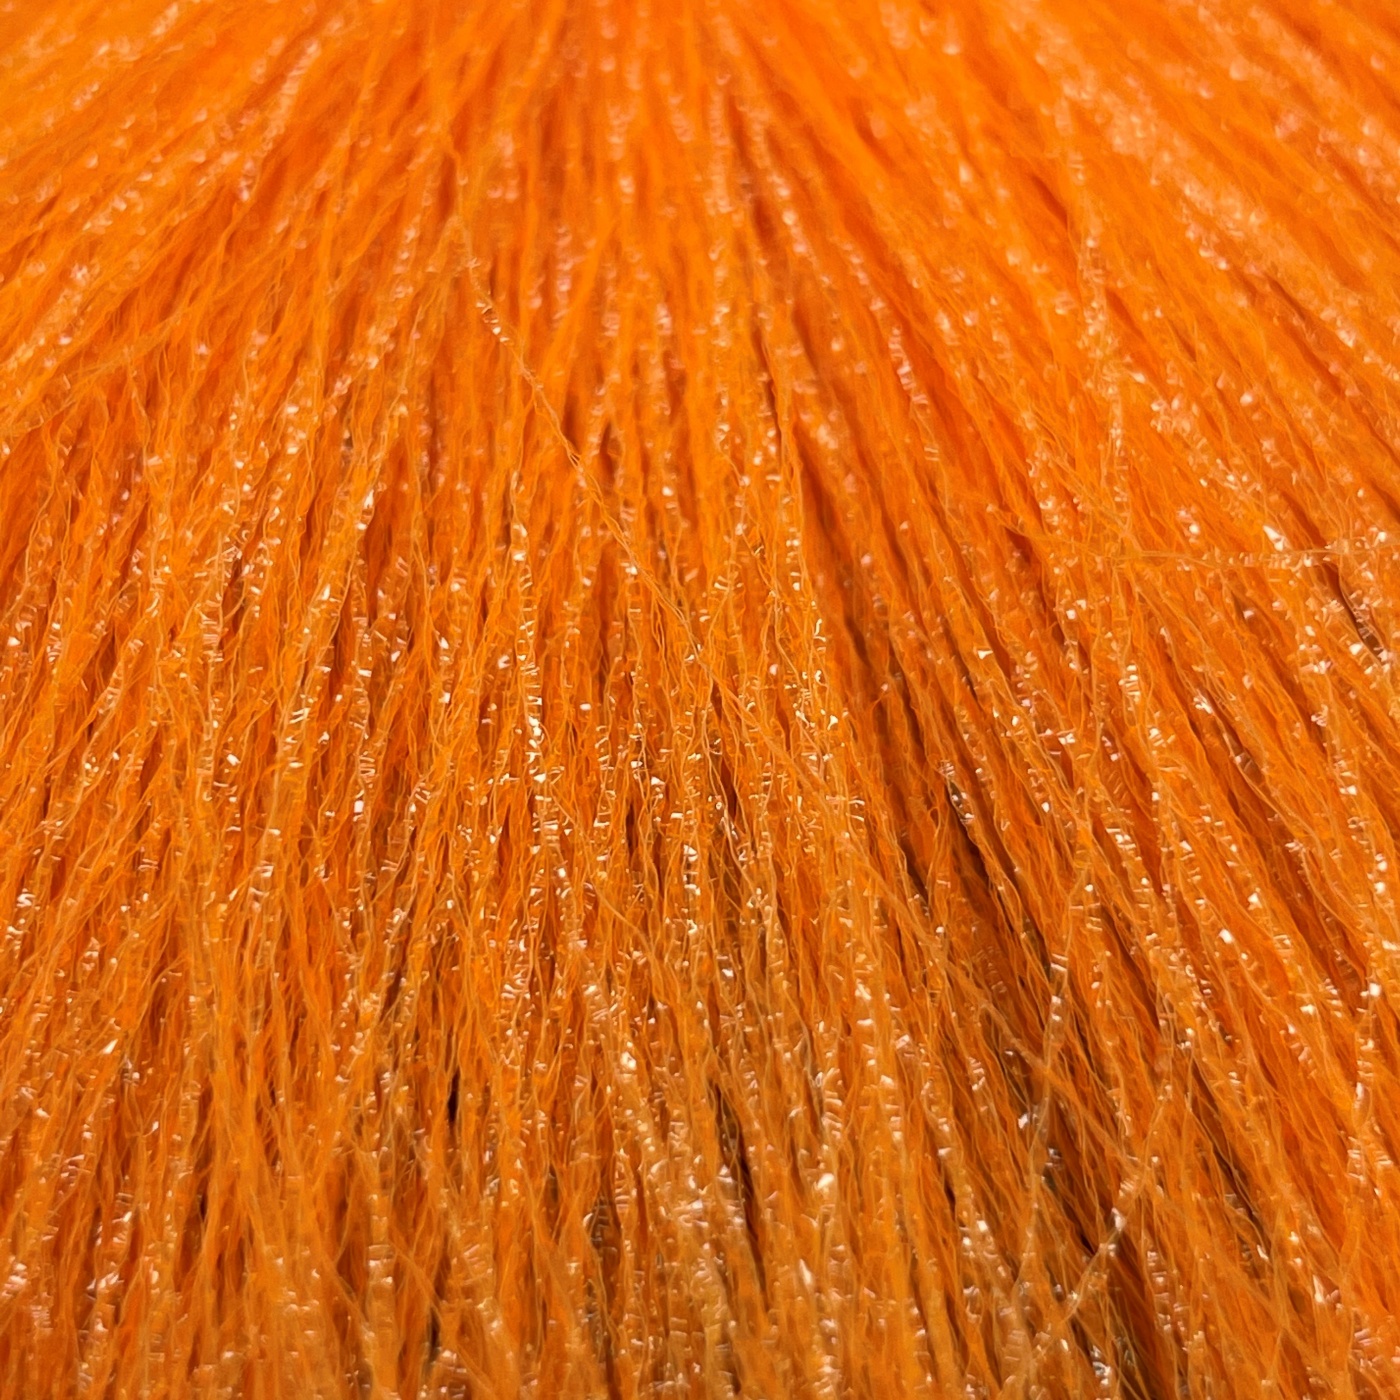 Lureflash Fluoroflash Orange Hanked Fly Tying Material